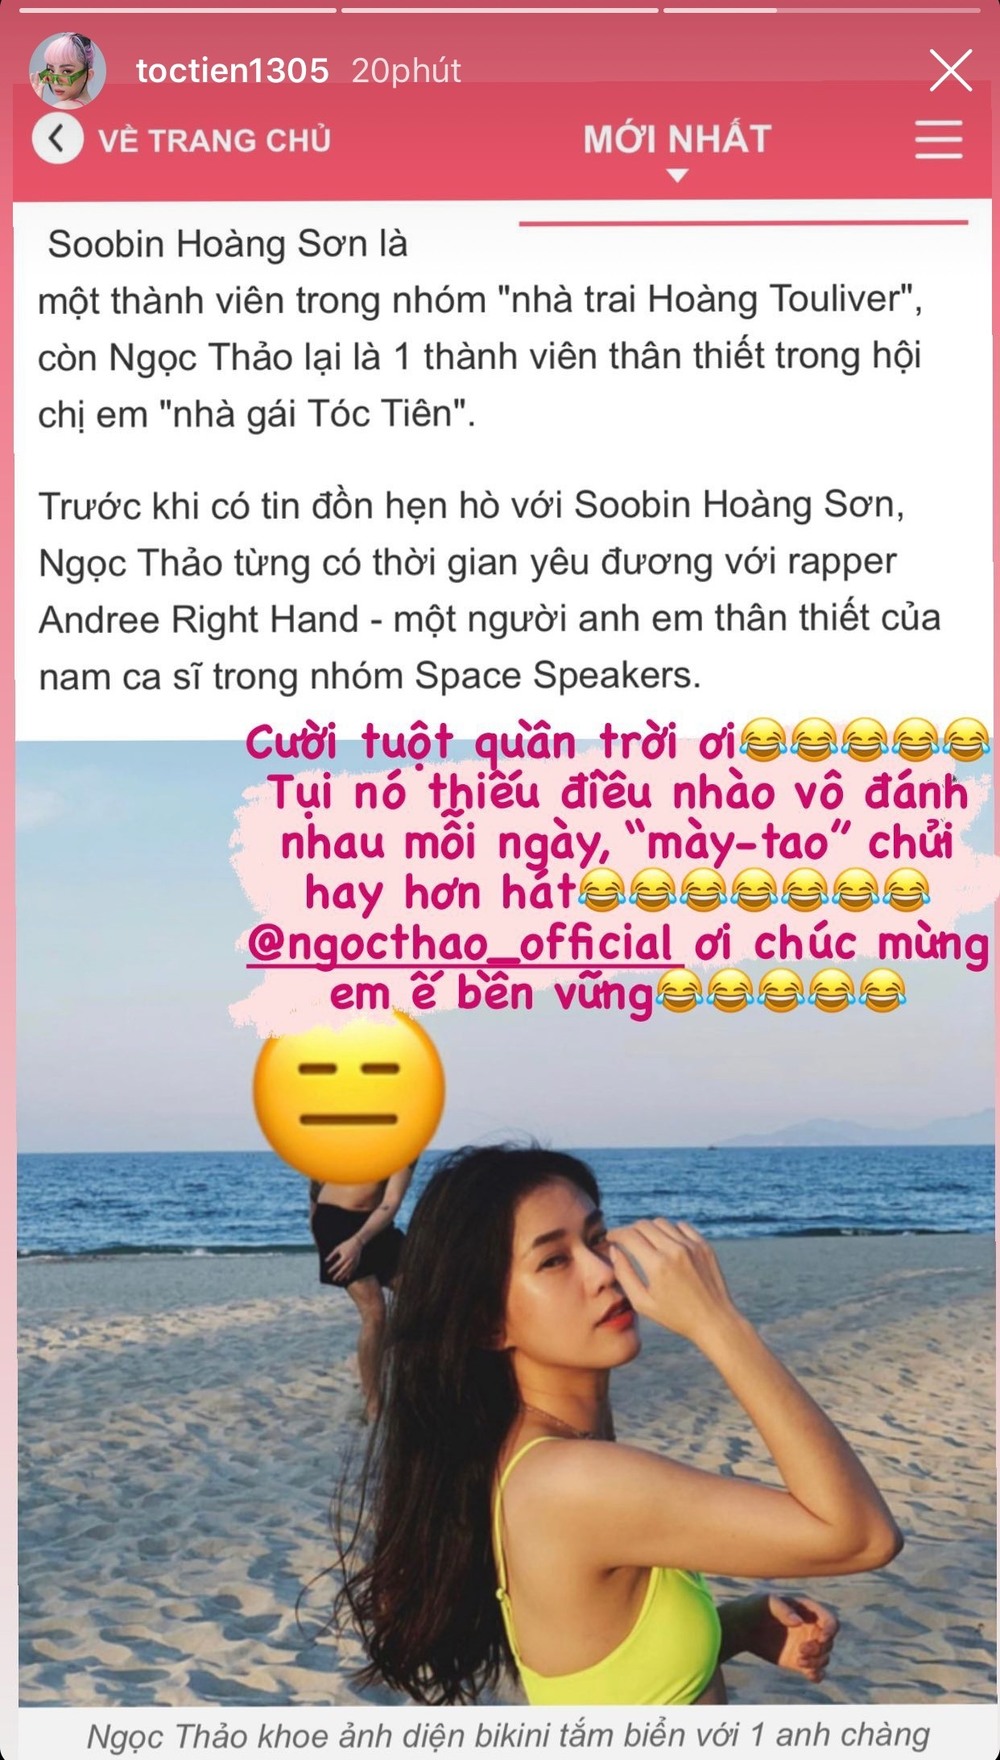  
Dòng chia sẻ của Tóc Tiên khi hai em dính tin đồn hẹn hò (Ảnh: Chụp màn hình).